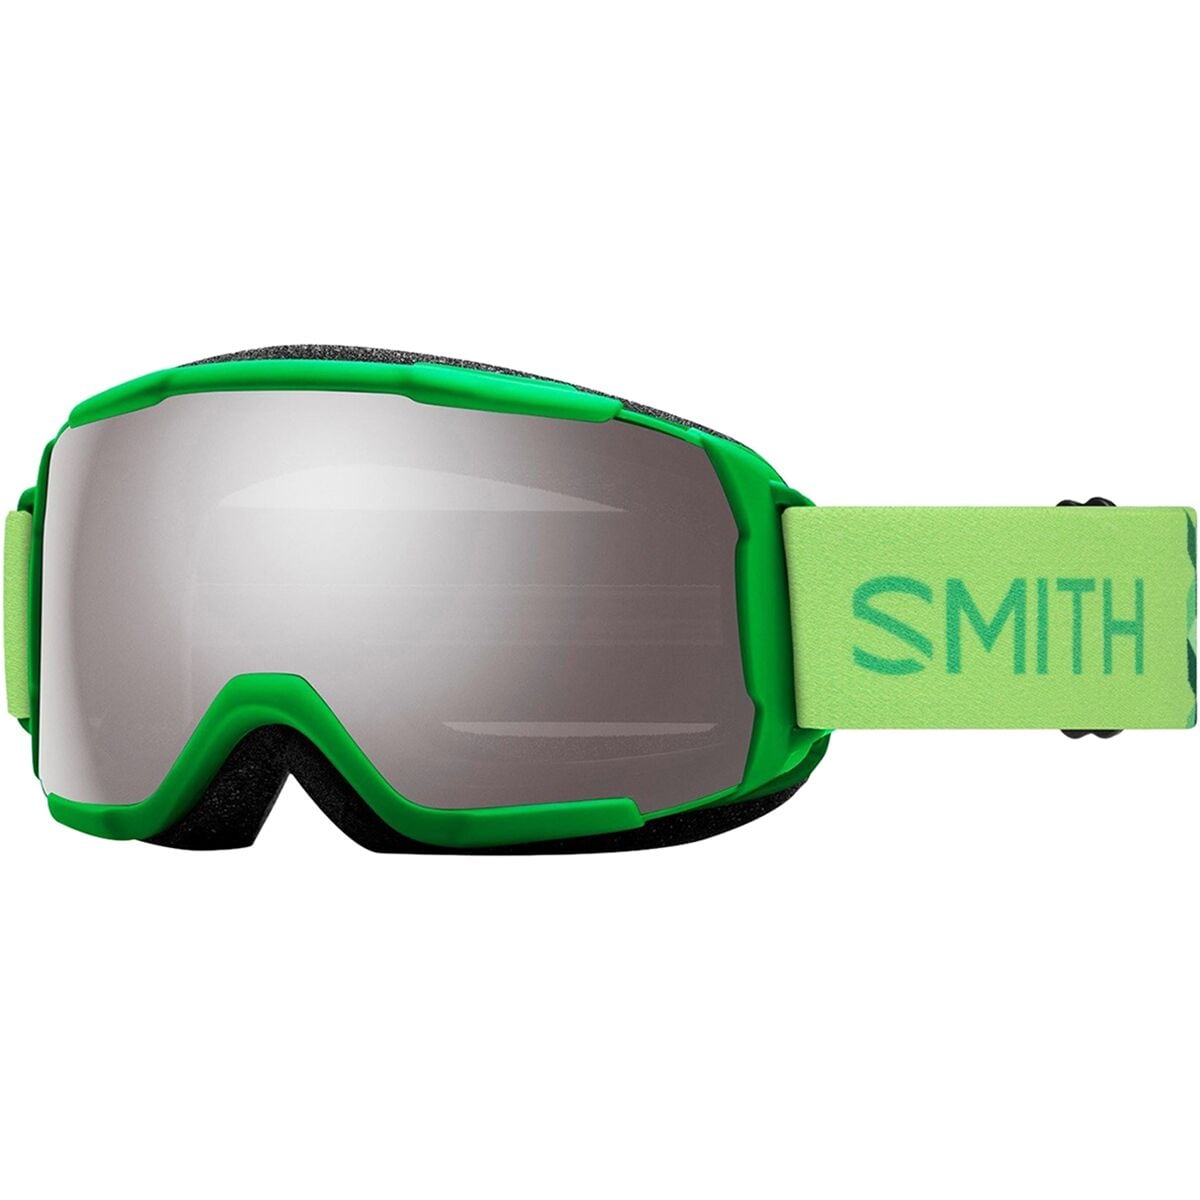 Smith Grom ChromaPop Goggles - Kids' Slime Watch Your Step